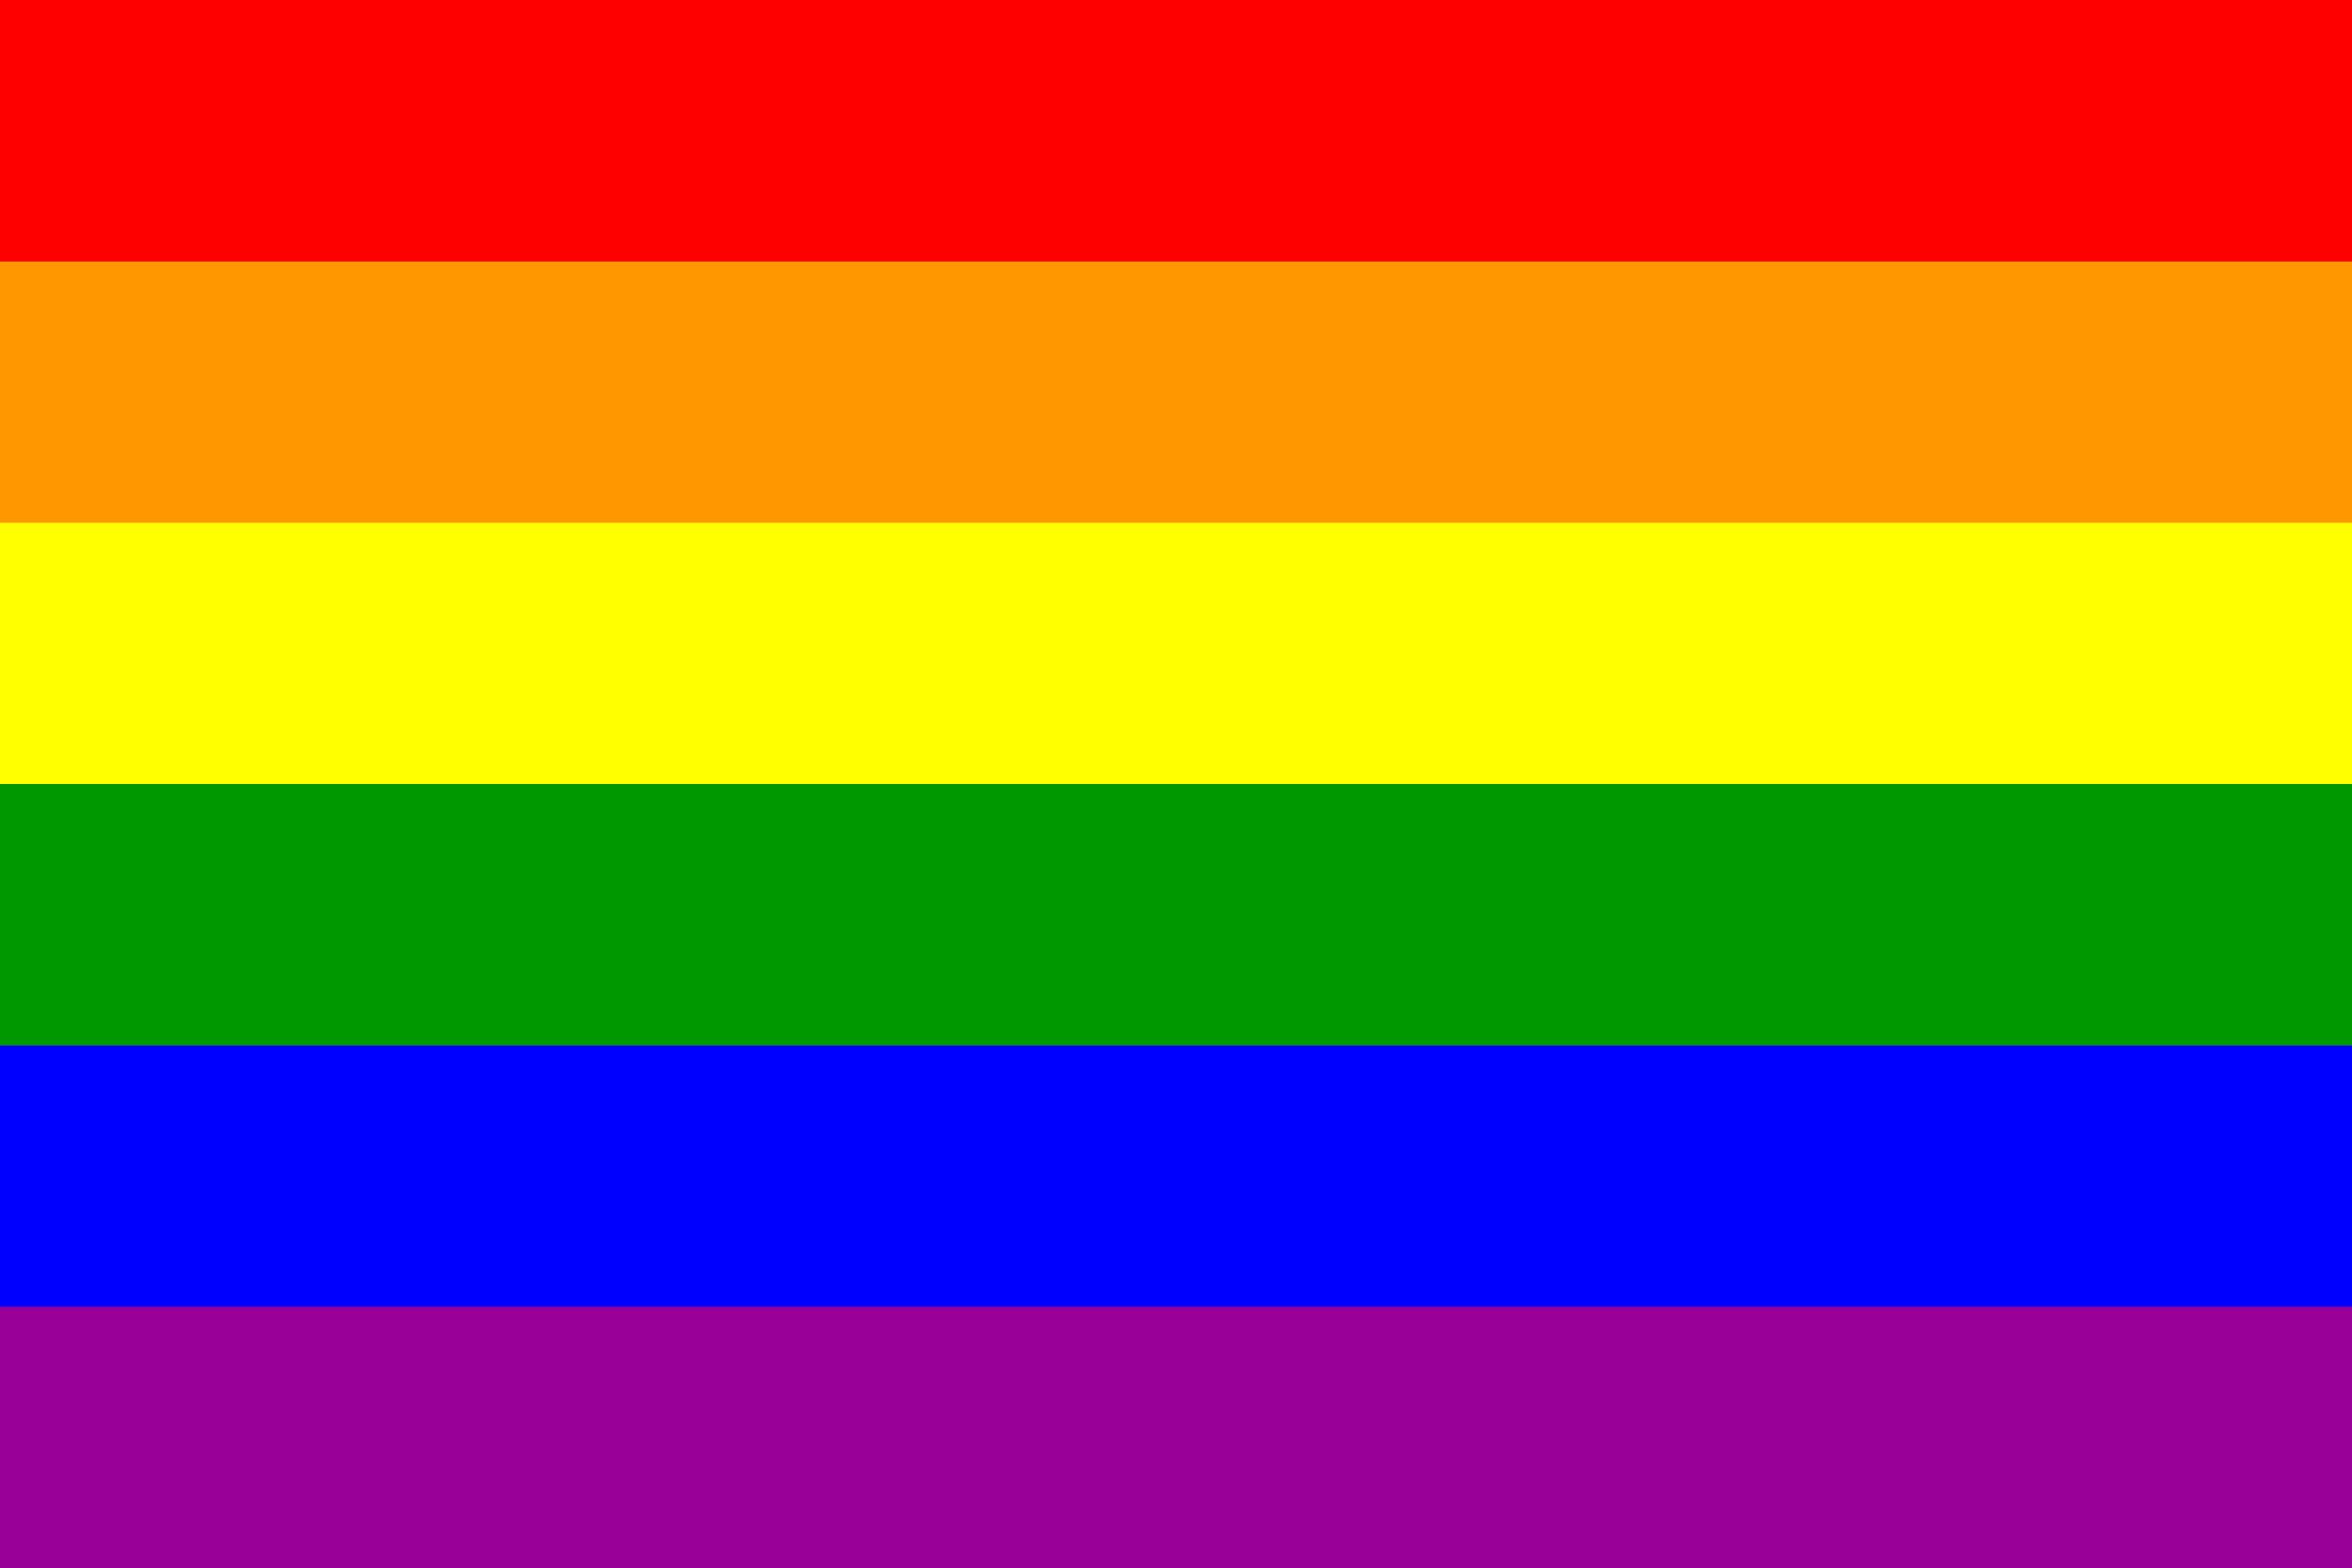 gay flag facebook